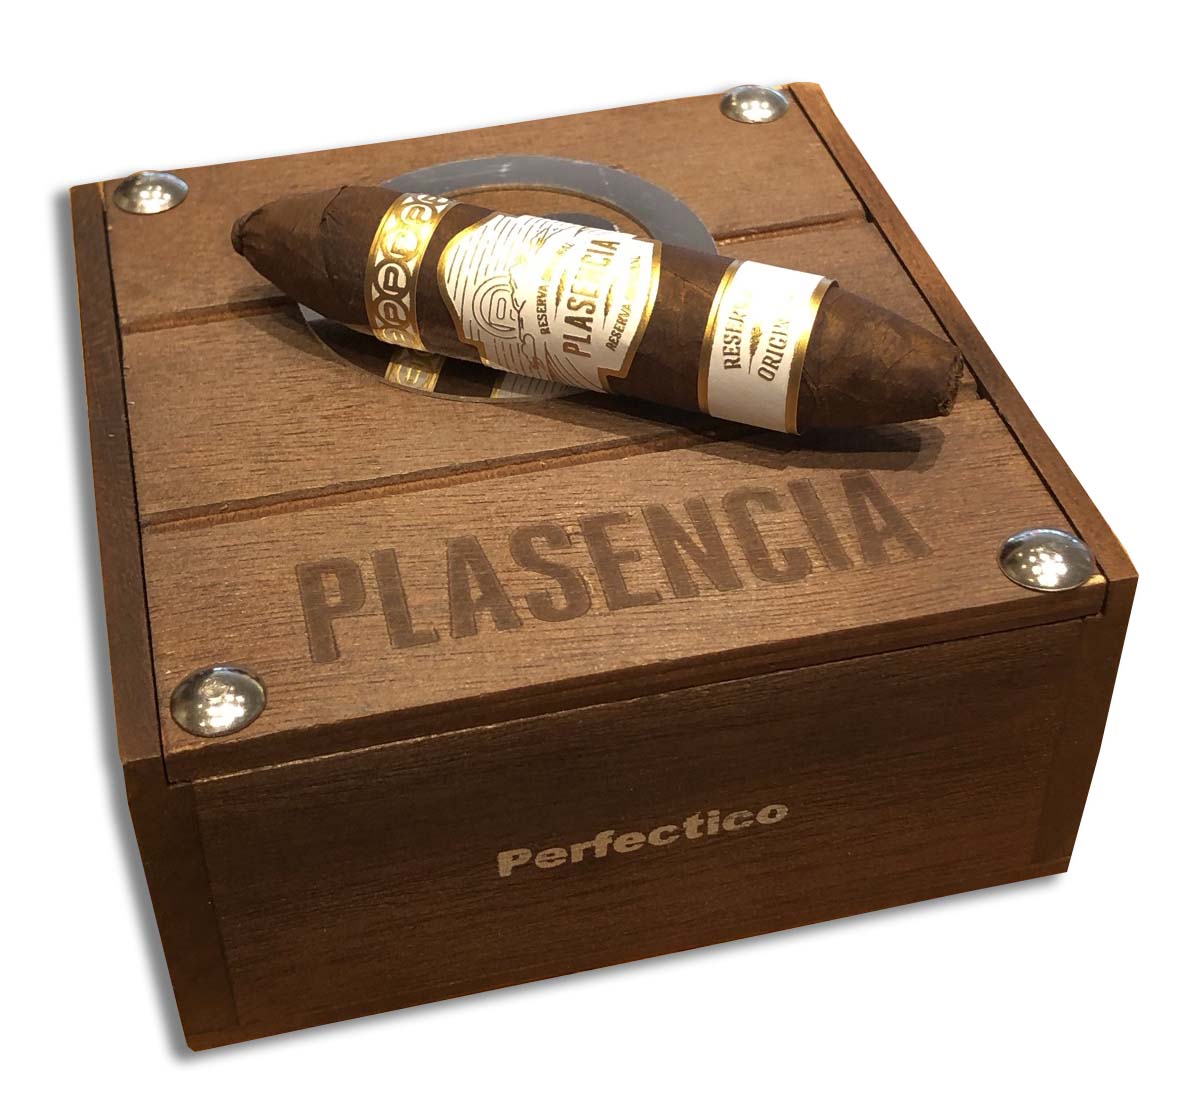 Plasencia Reserva Original 'Perfectico' / Box of 10 Cigars